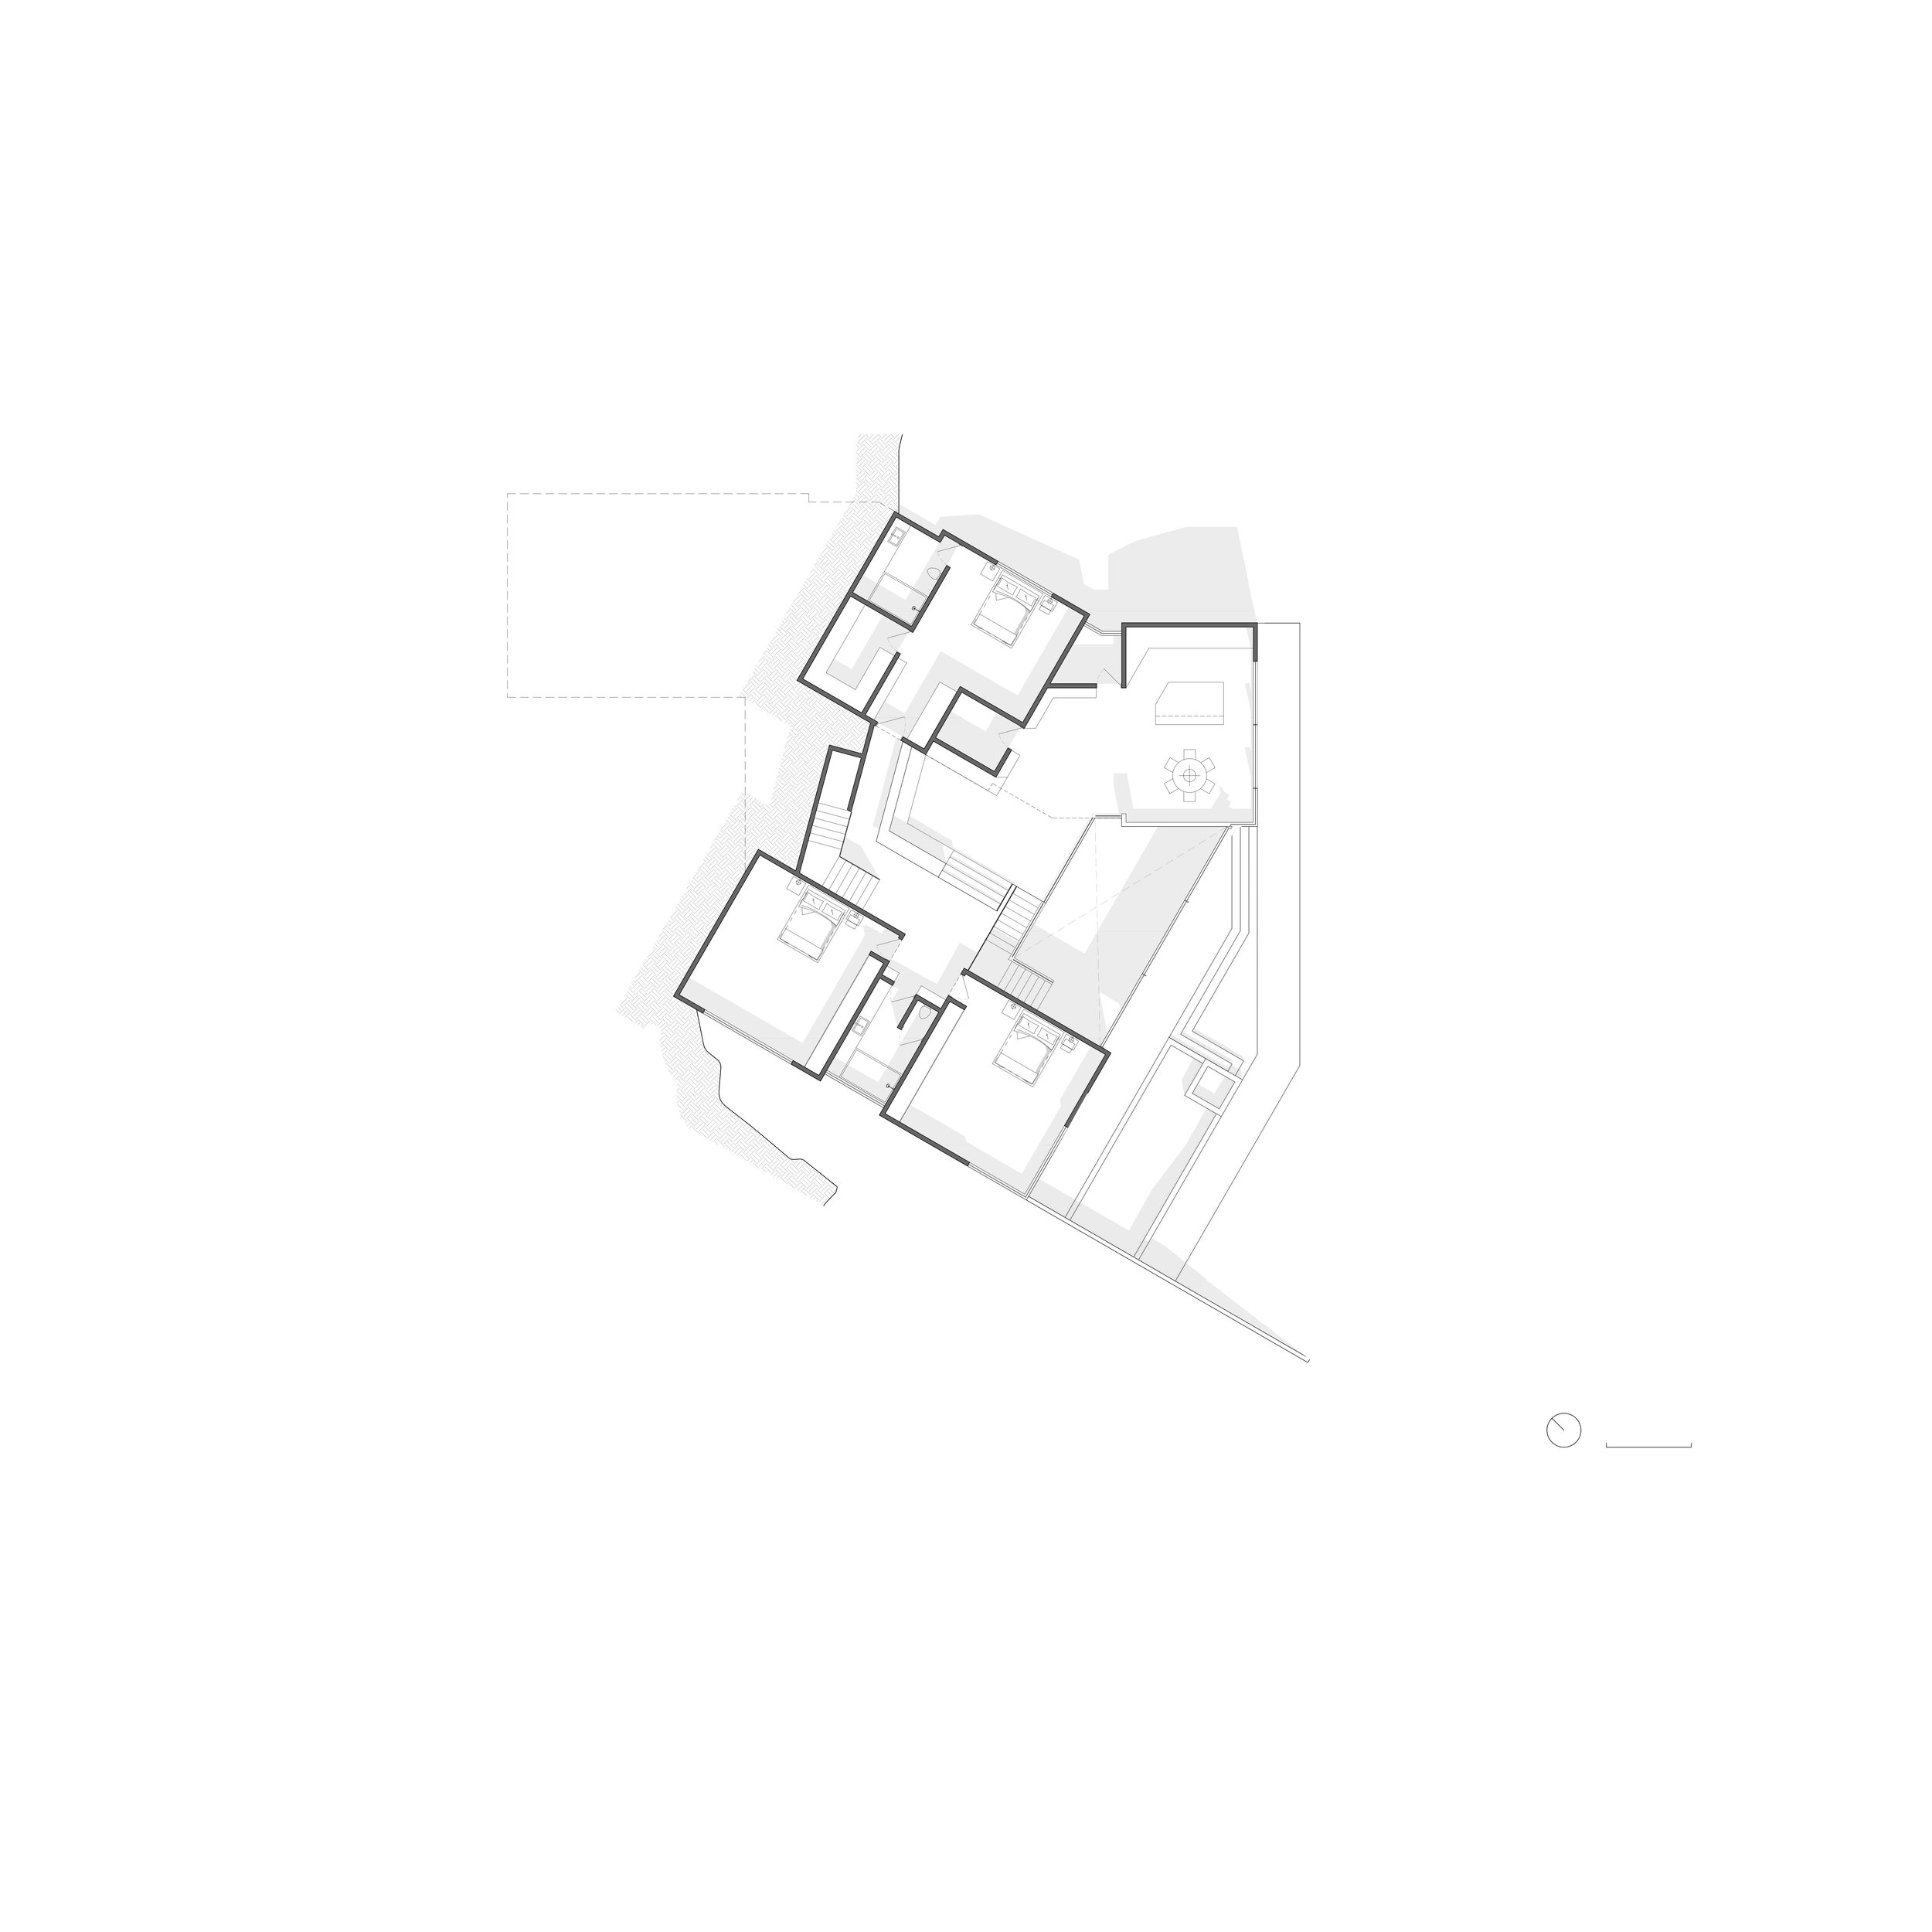 VML_Publications - 02 Second Floor Plan.jpg